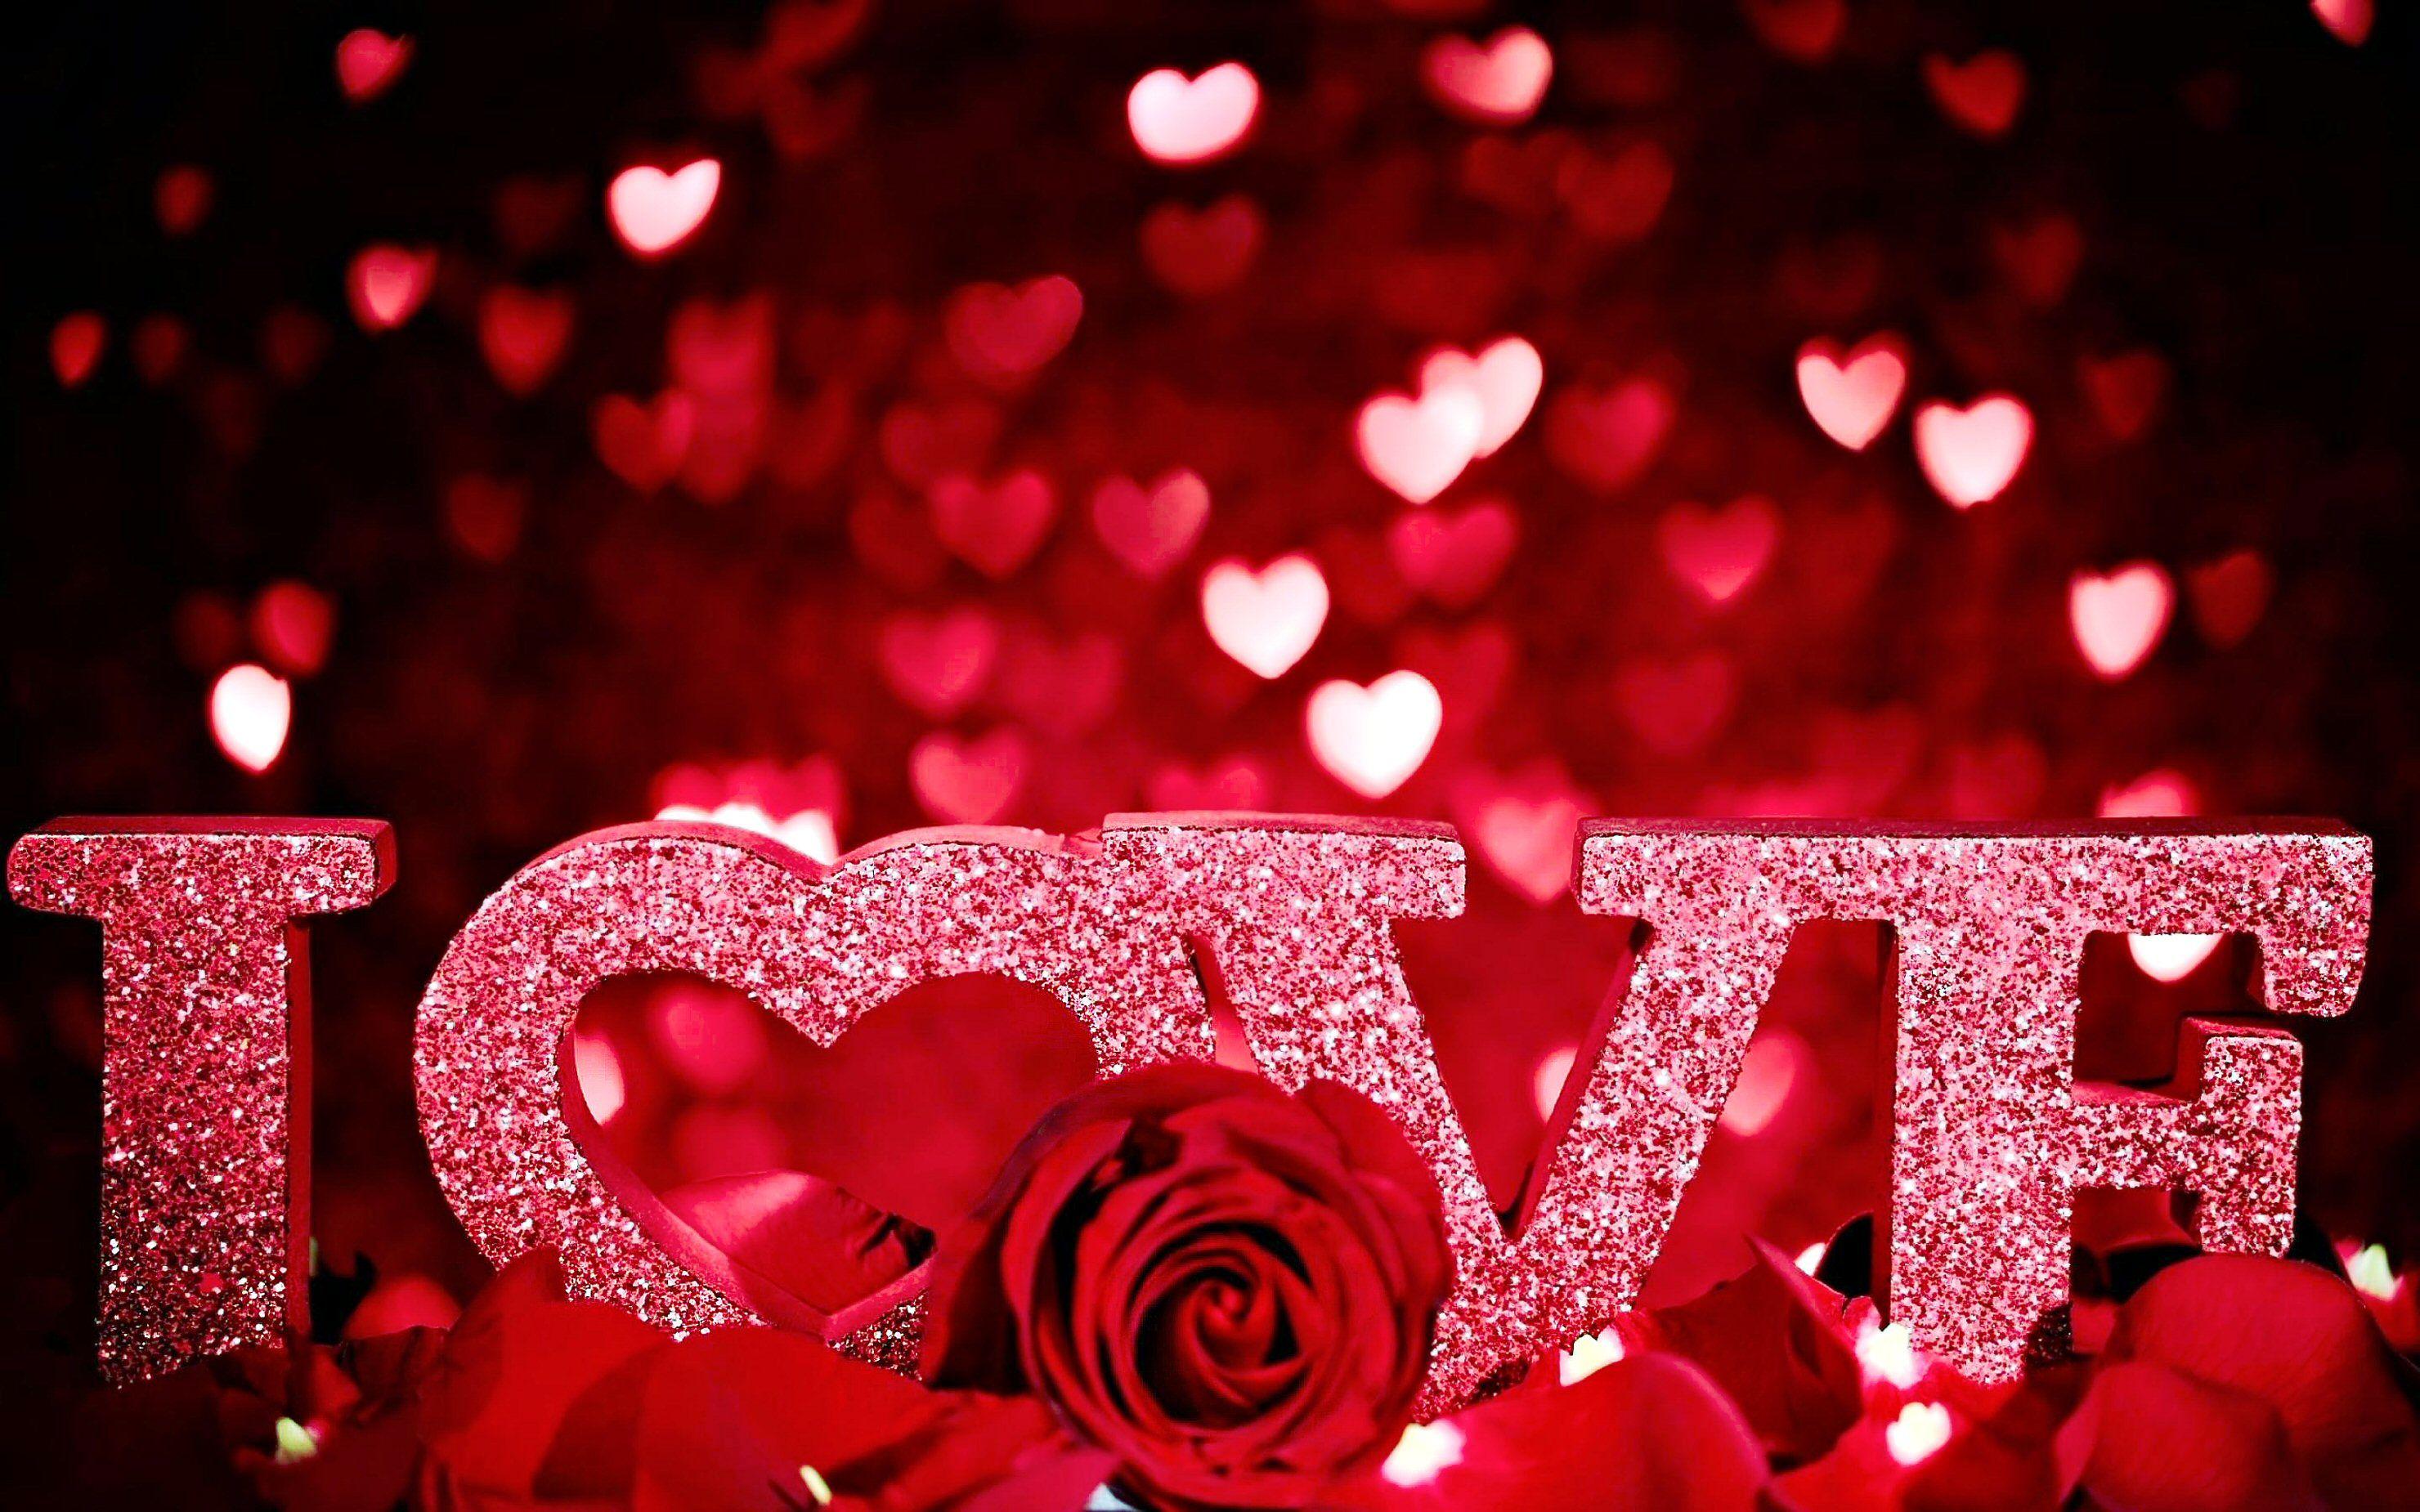 Muốn thỏa mãn cơn khát trải nghiệm sắc màu tình yêu? Tại sao bạn không tìm kiếm và tải về những hình ảnh đẹp valentine hay hình nền valentine để đón mừng ngày lễ tình nhân này nhỉ?